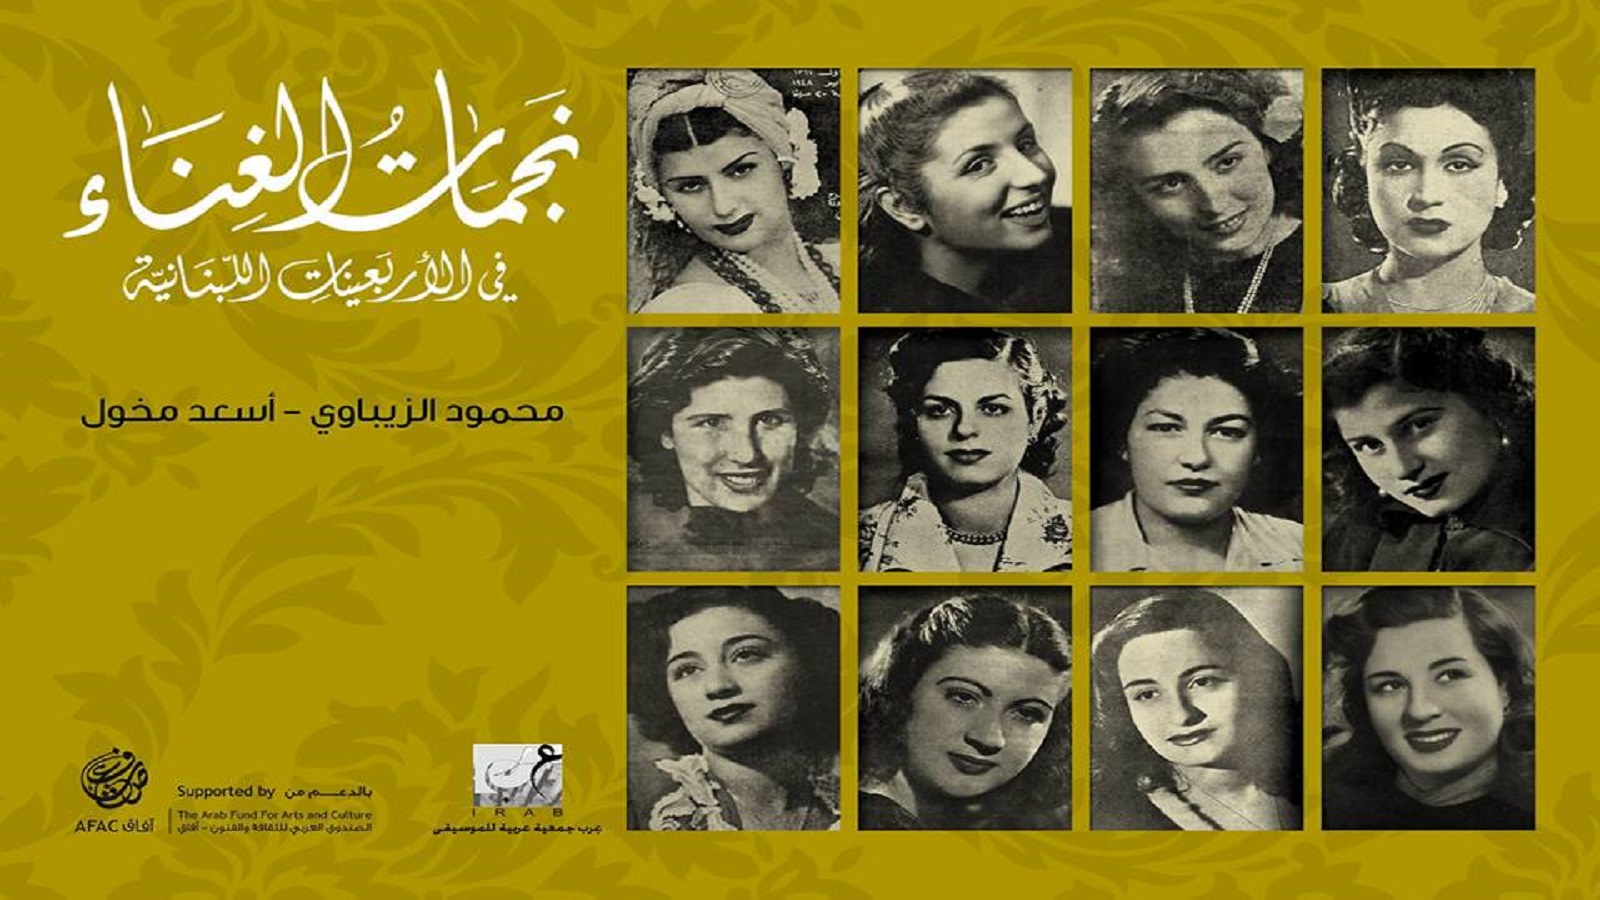 "نجمات الغناء في الأربعينيات اللبنانية" لمحمود الزيباوي وأسعد مخول